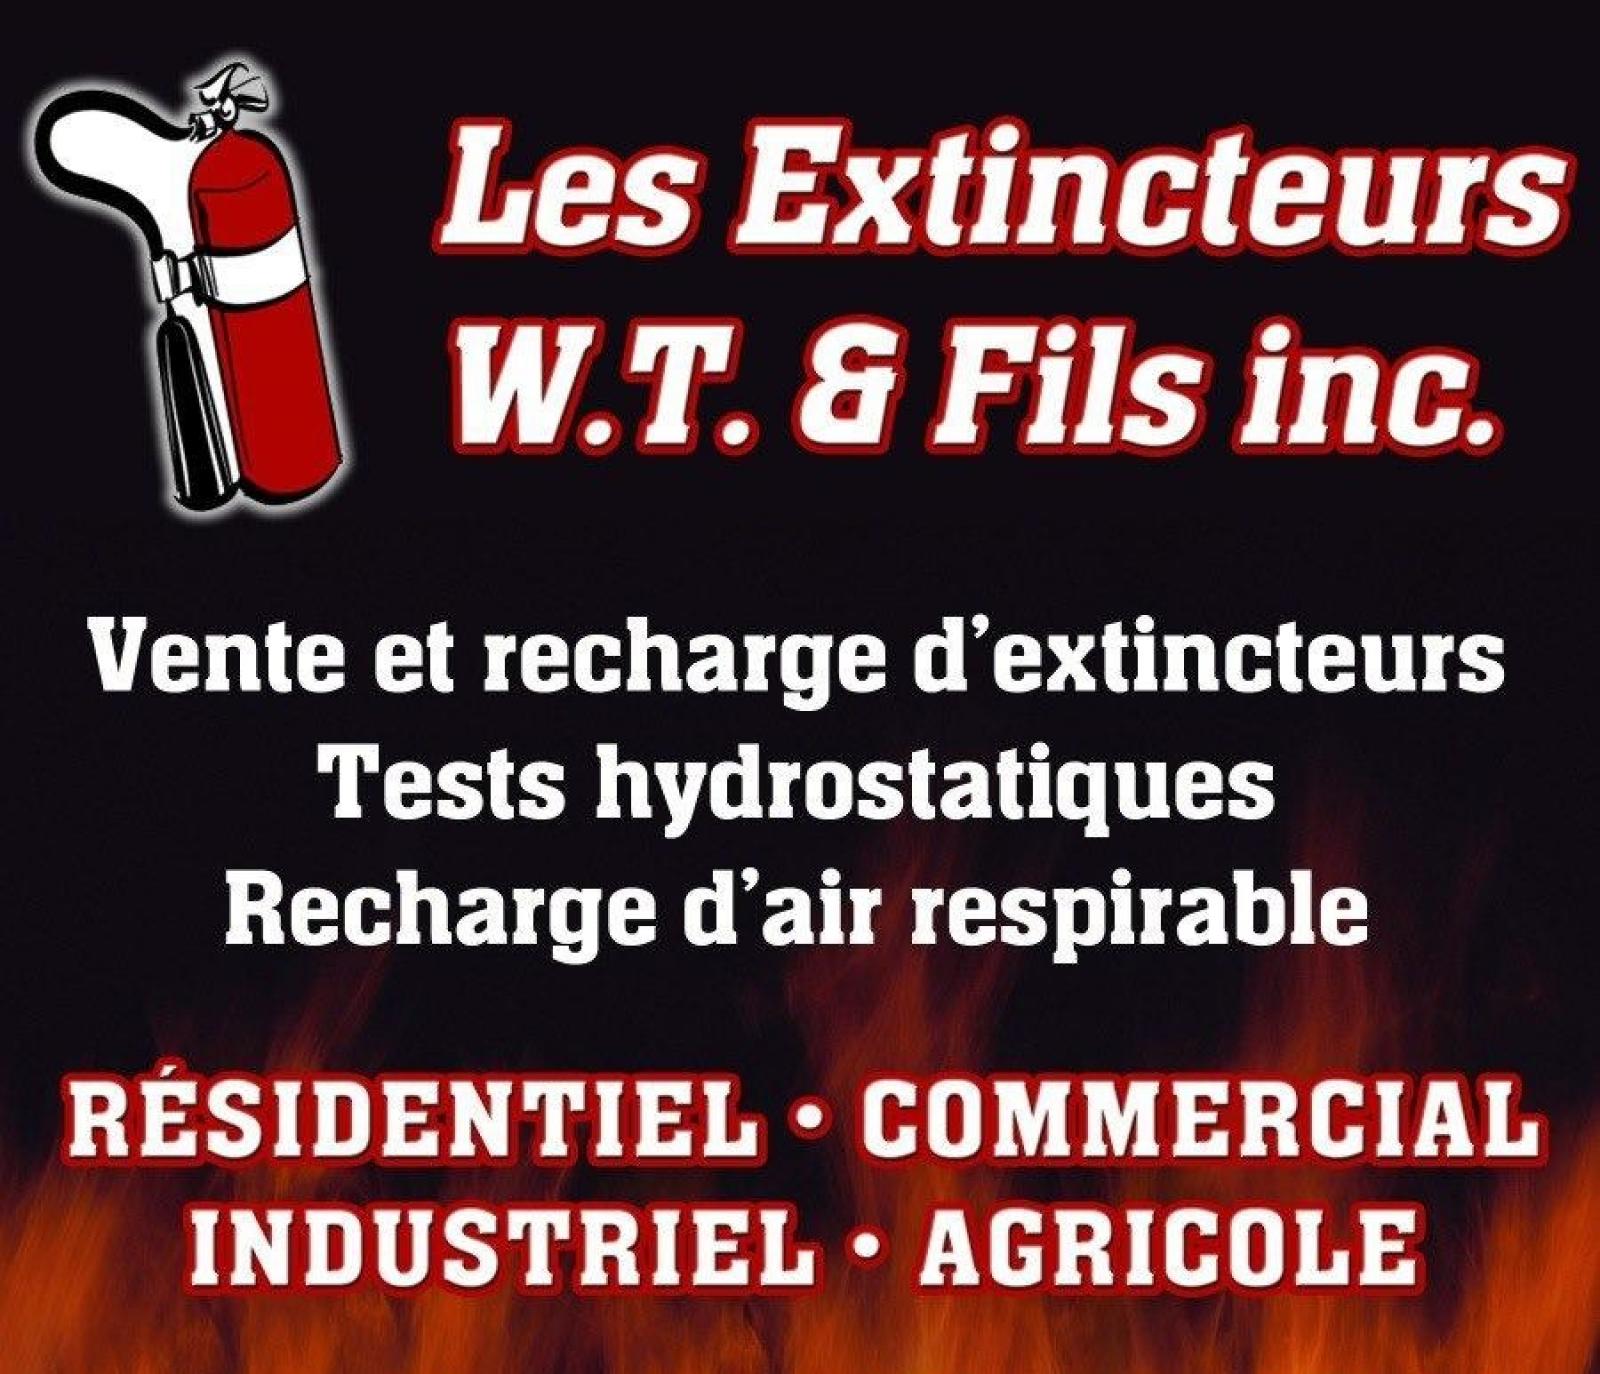 Les Extincteurs WT et fils. Logo